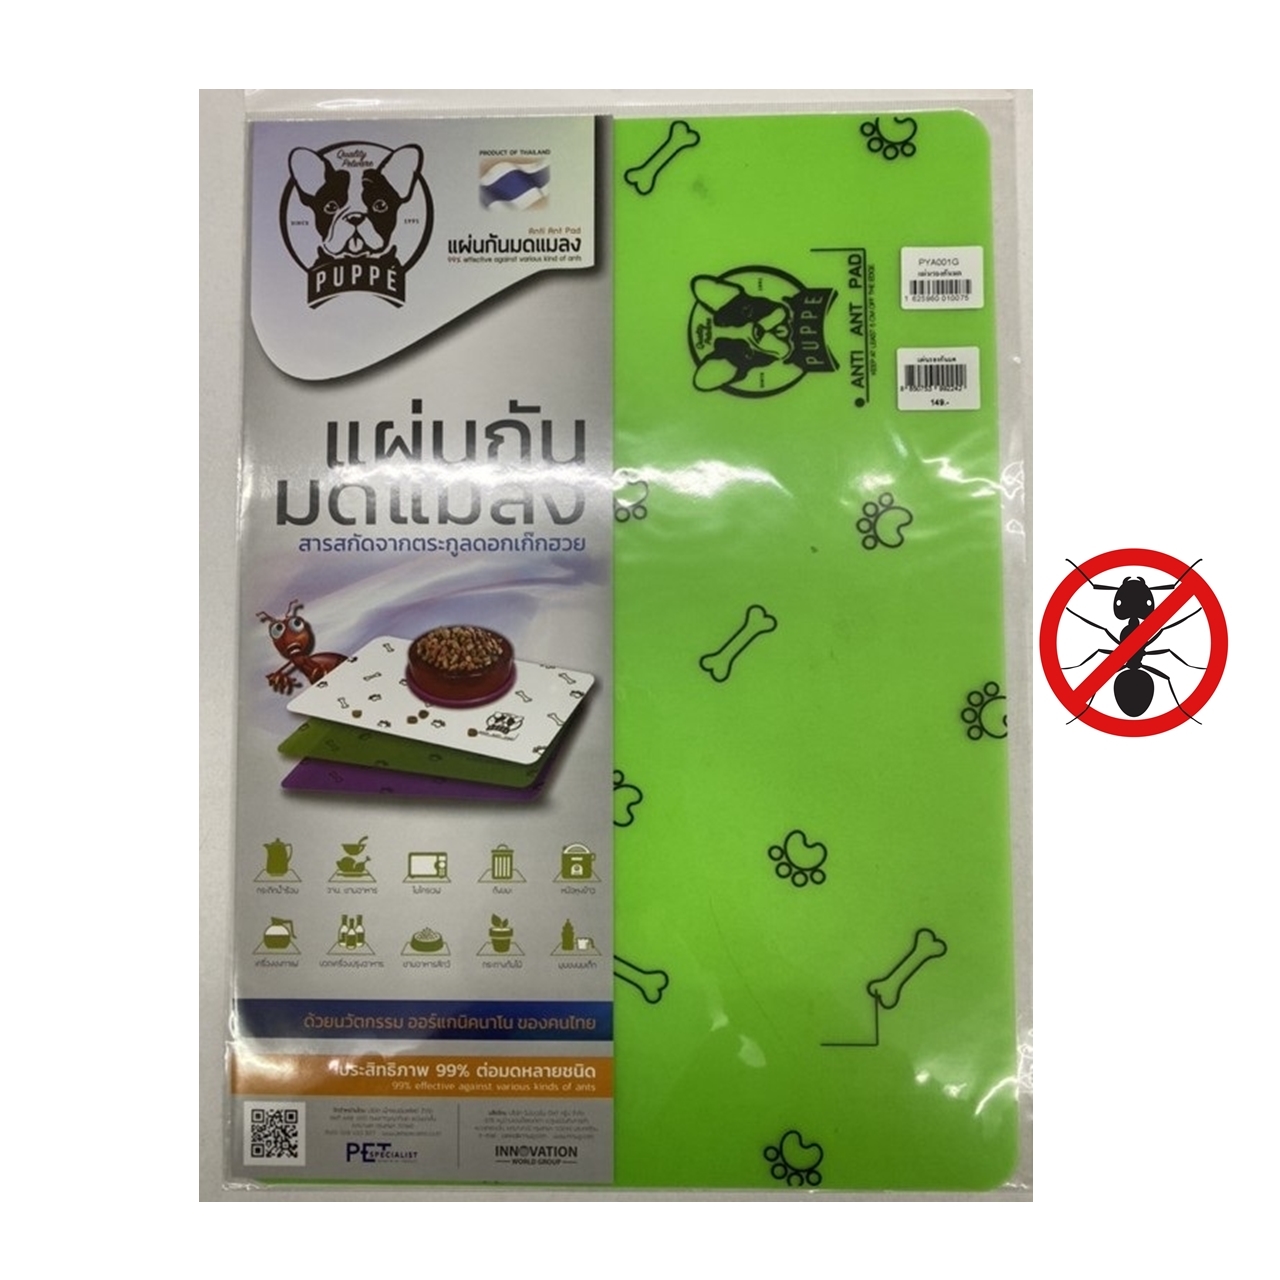 Puppe Anti-Ant Pad แผ่นรองกันมด ชามอาหารสัตว์ ขวดนม ปลอดภัย ได้ผล แผ่นกันมด สีเขียว (1 แผ่น)